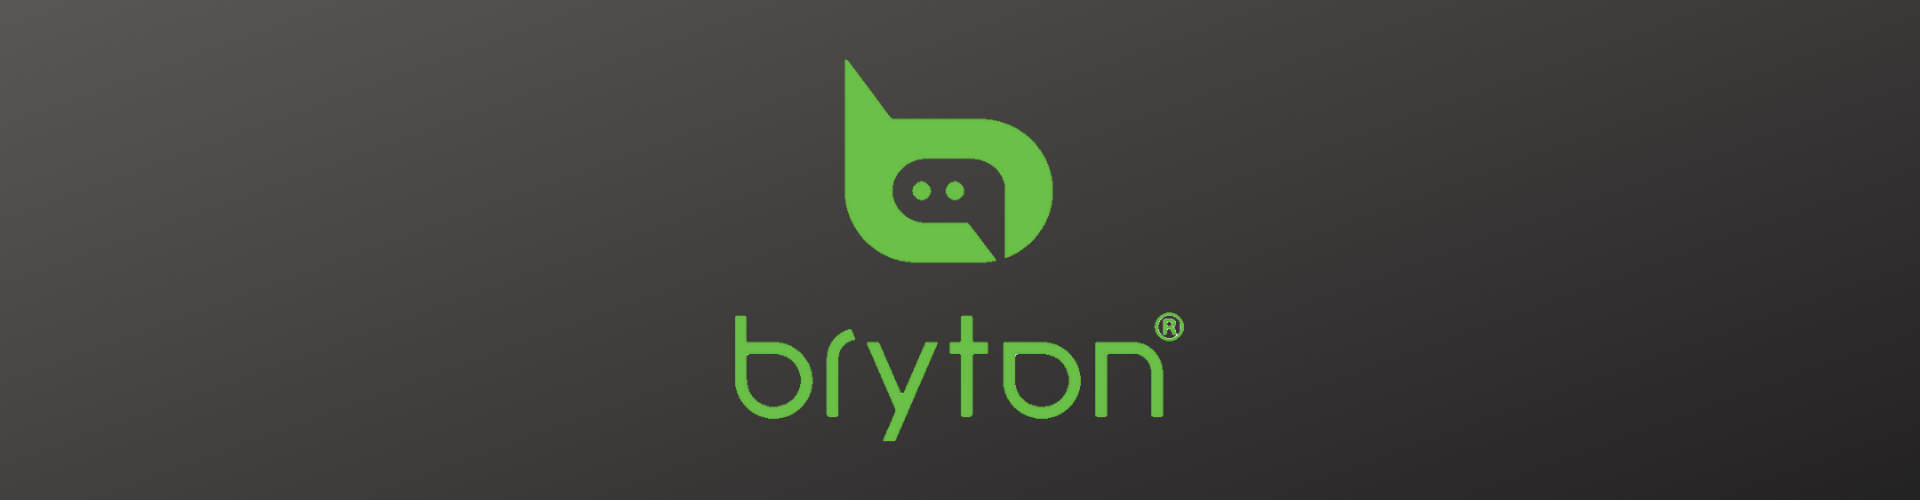 Bryton Brand Category